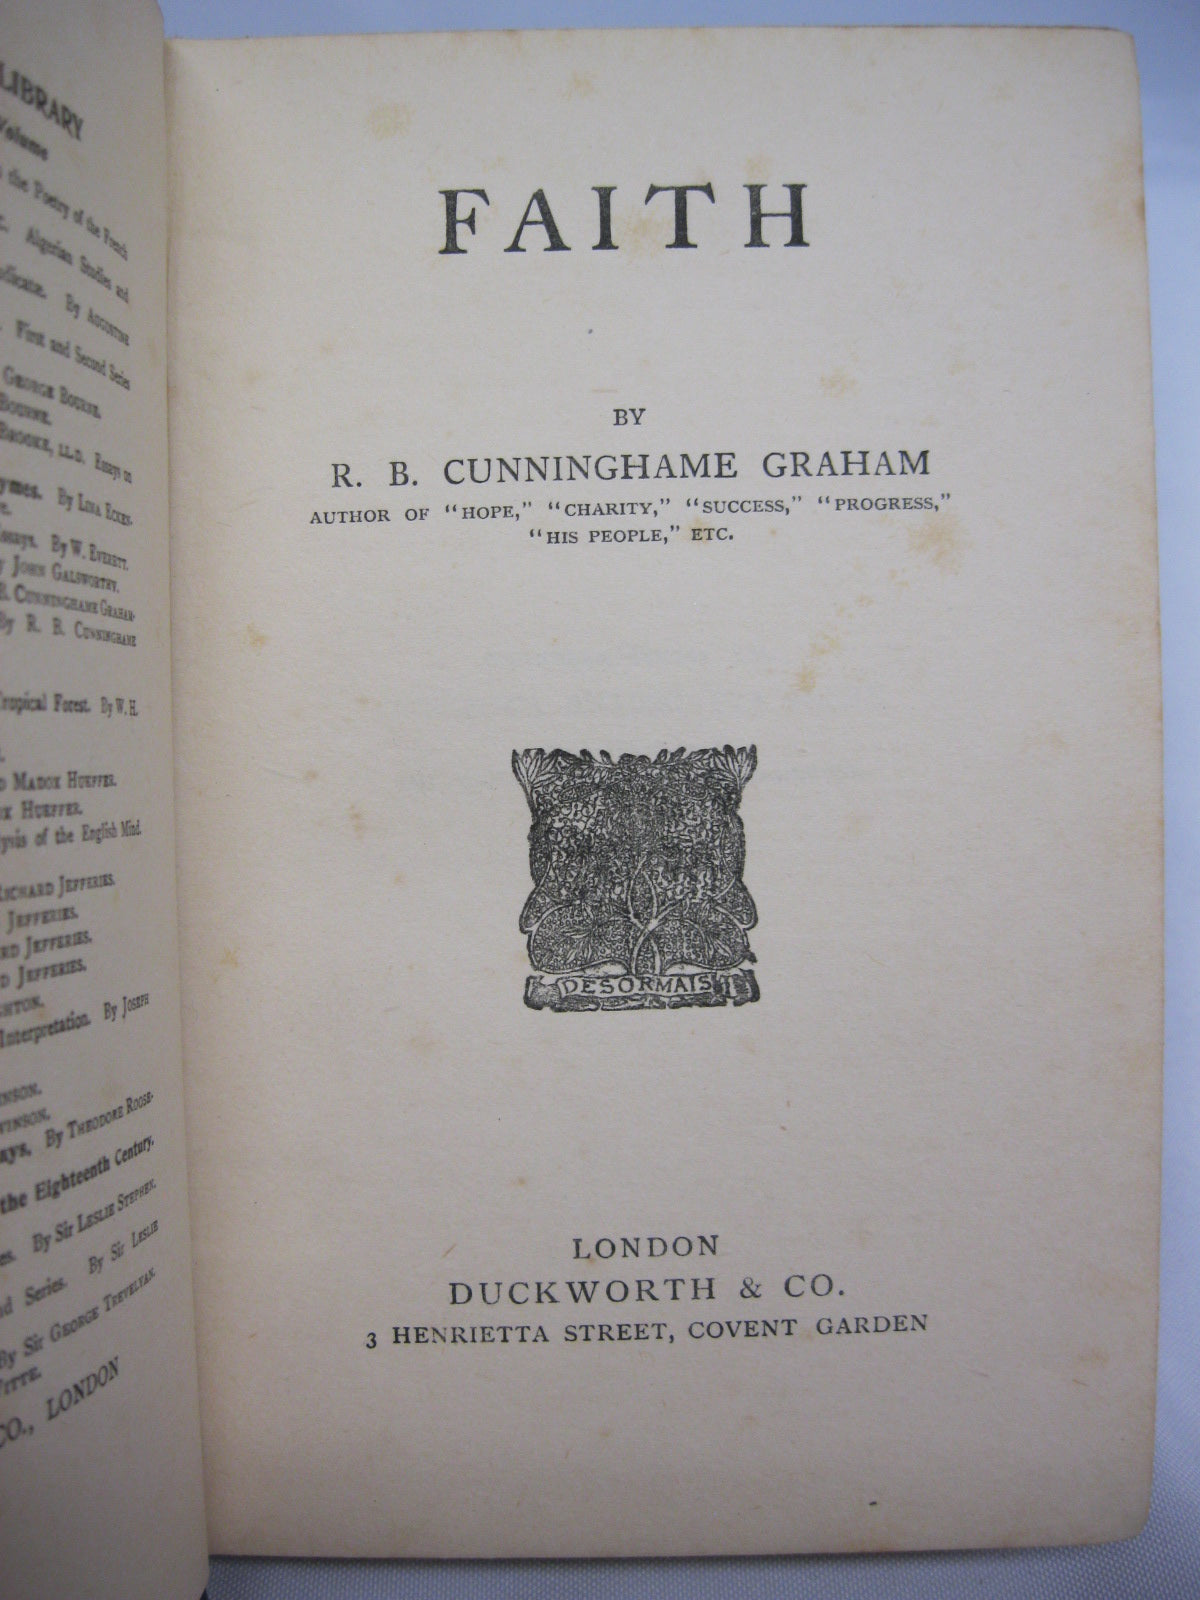 Faith by R.B. Cunninghame Grahame